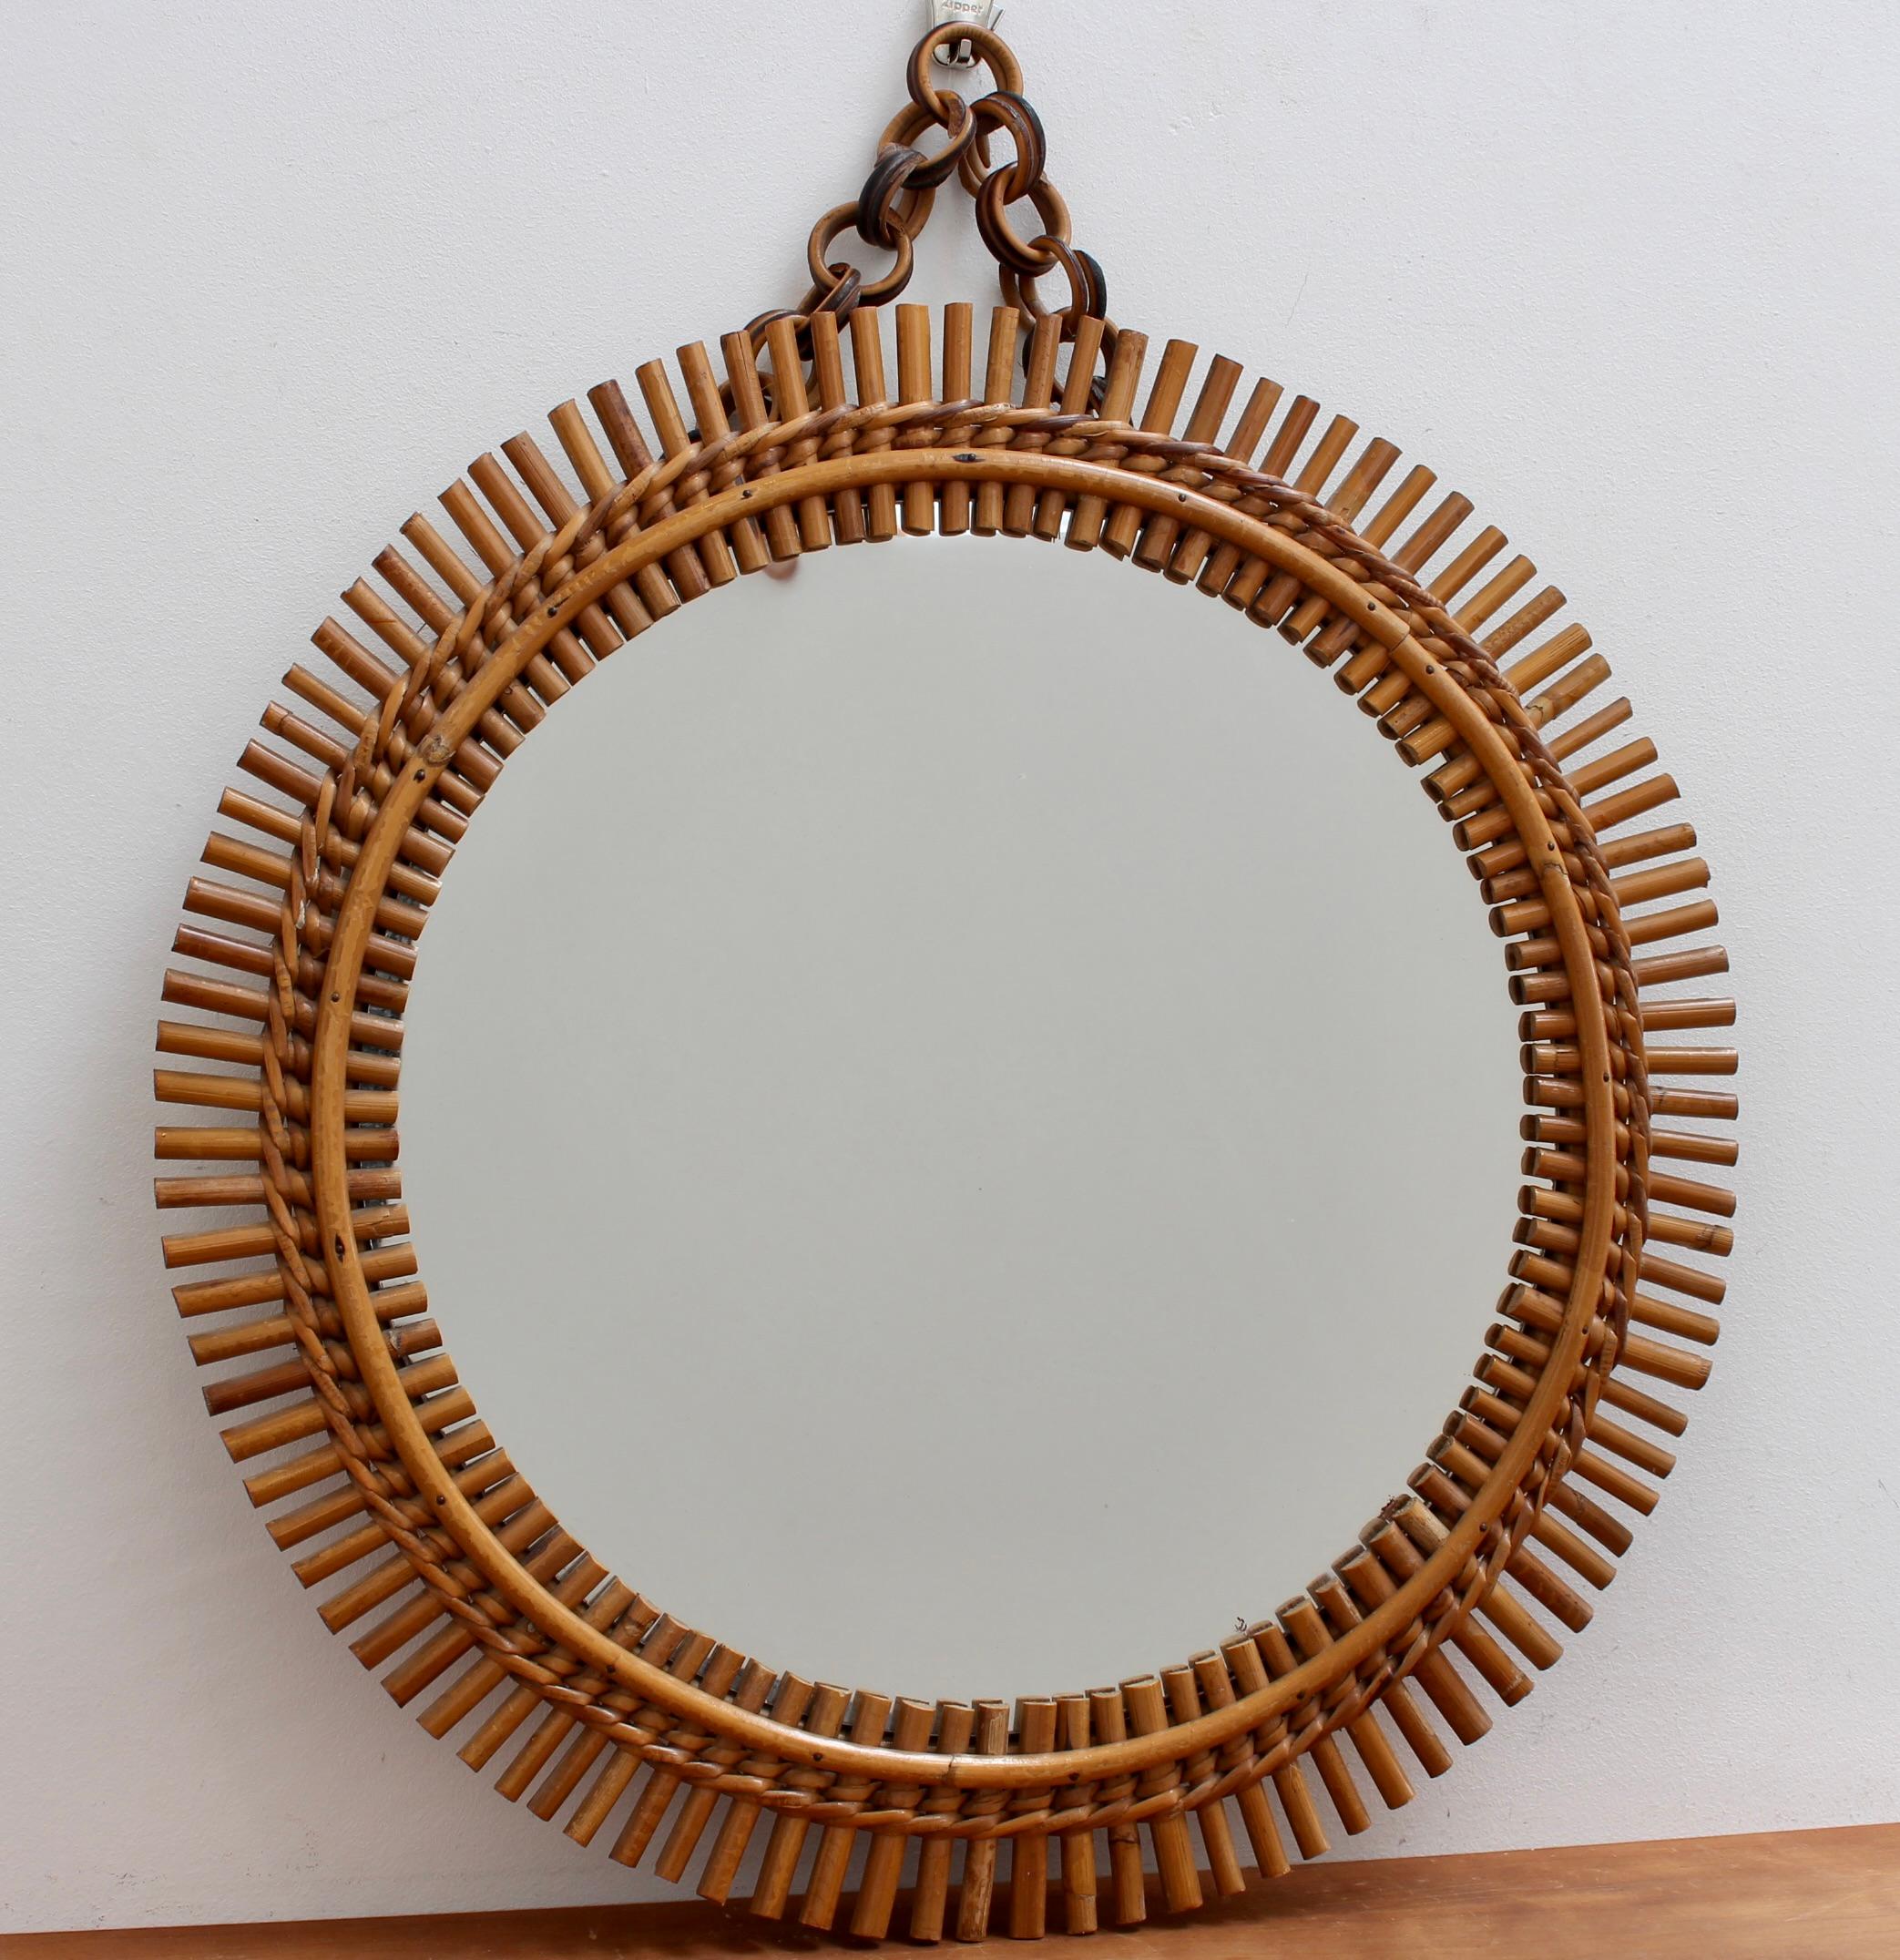 Miroir mural rond en rotin vintage italien avec chaîne de suspension (circa 1960). Ce miroir a une forme très agréable liée à un motif de corde de rotin. La chaîne de suspension en rotin est intacte et ajoute à son attrait. Le cadre du miroir